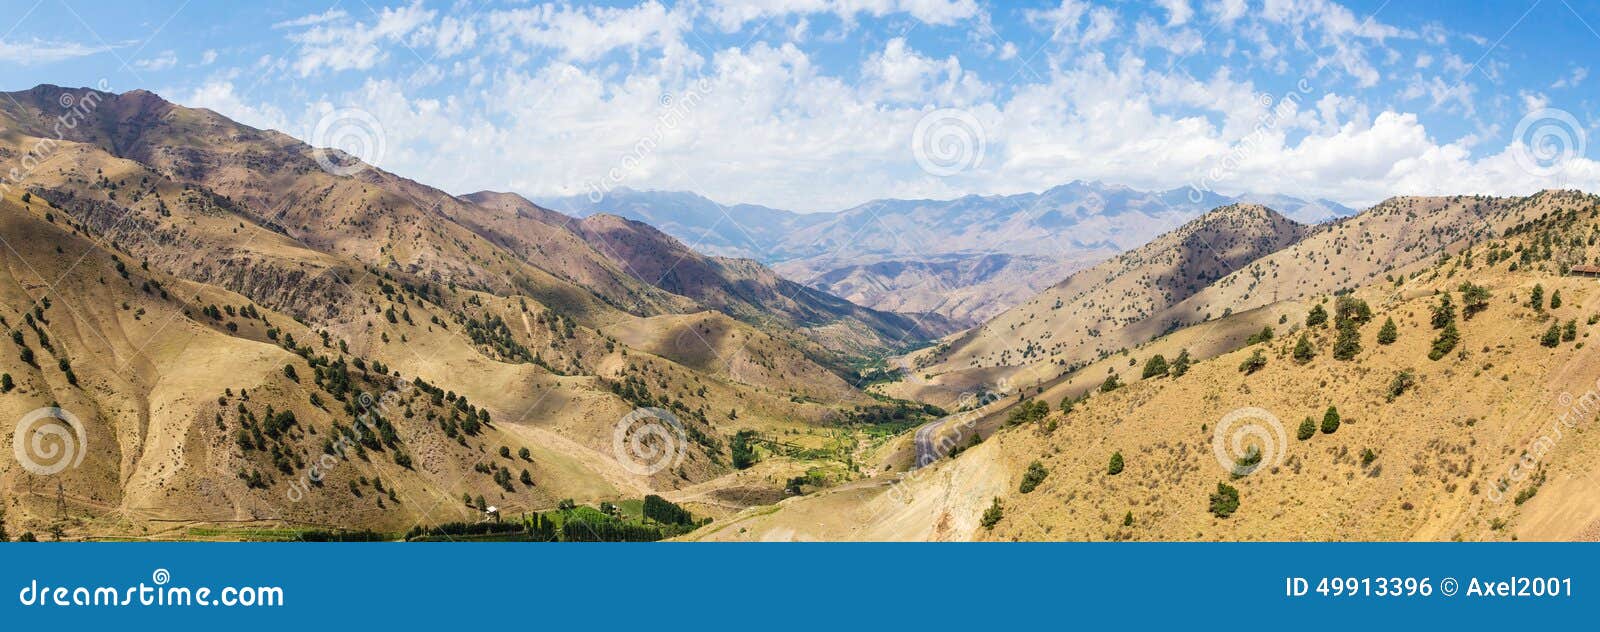 view from kamchik (qamchiq) mountain pass, uzbekistan.